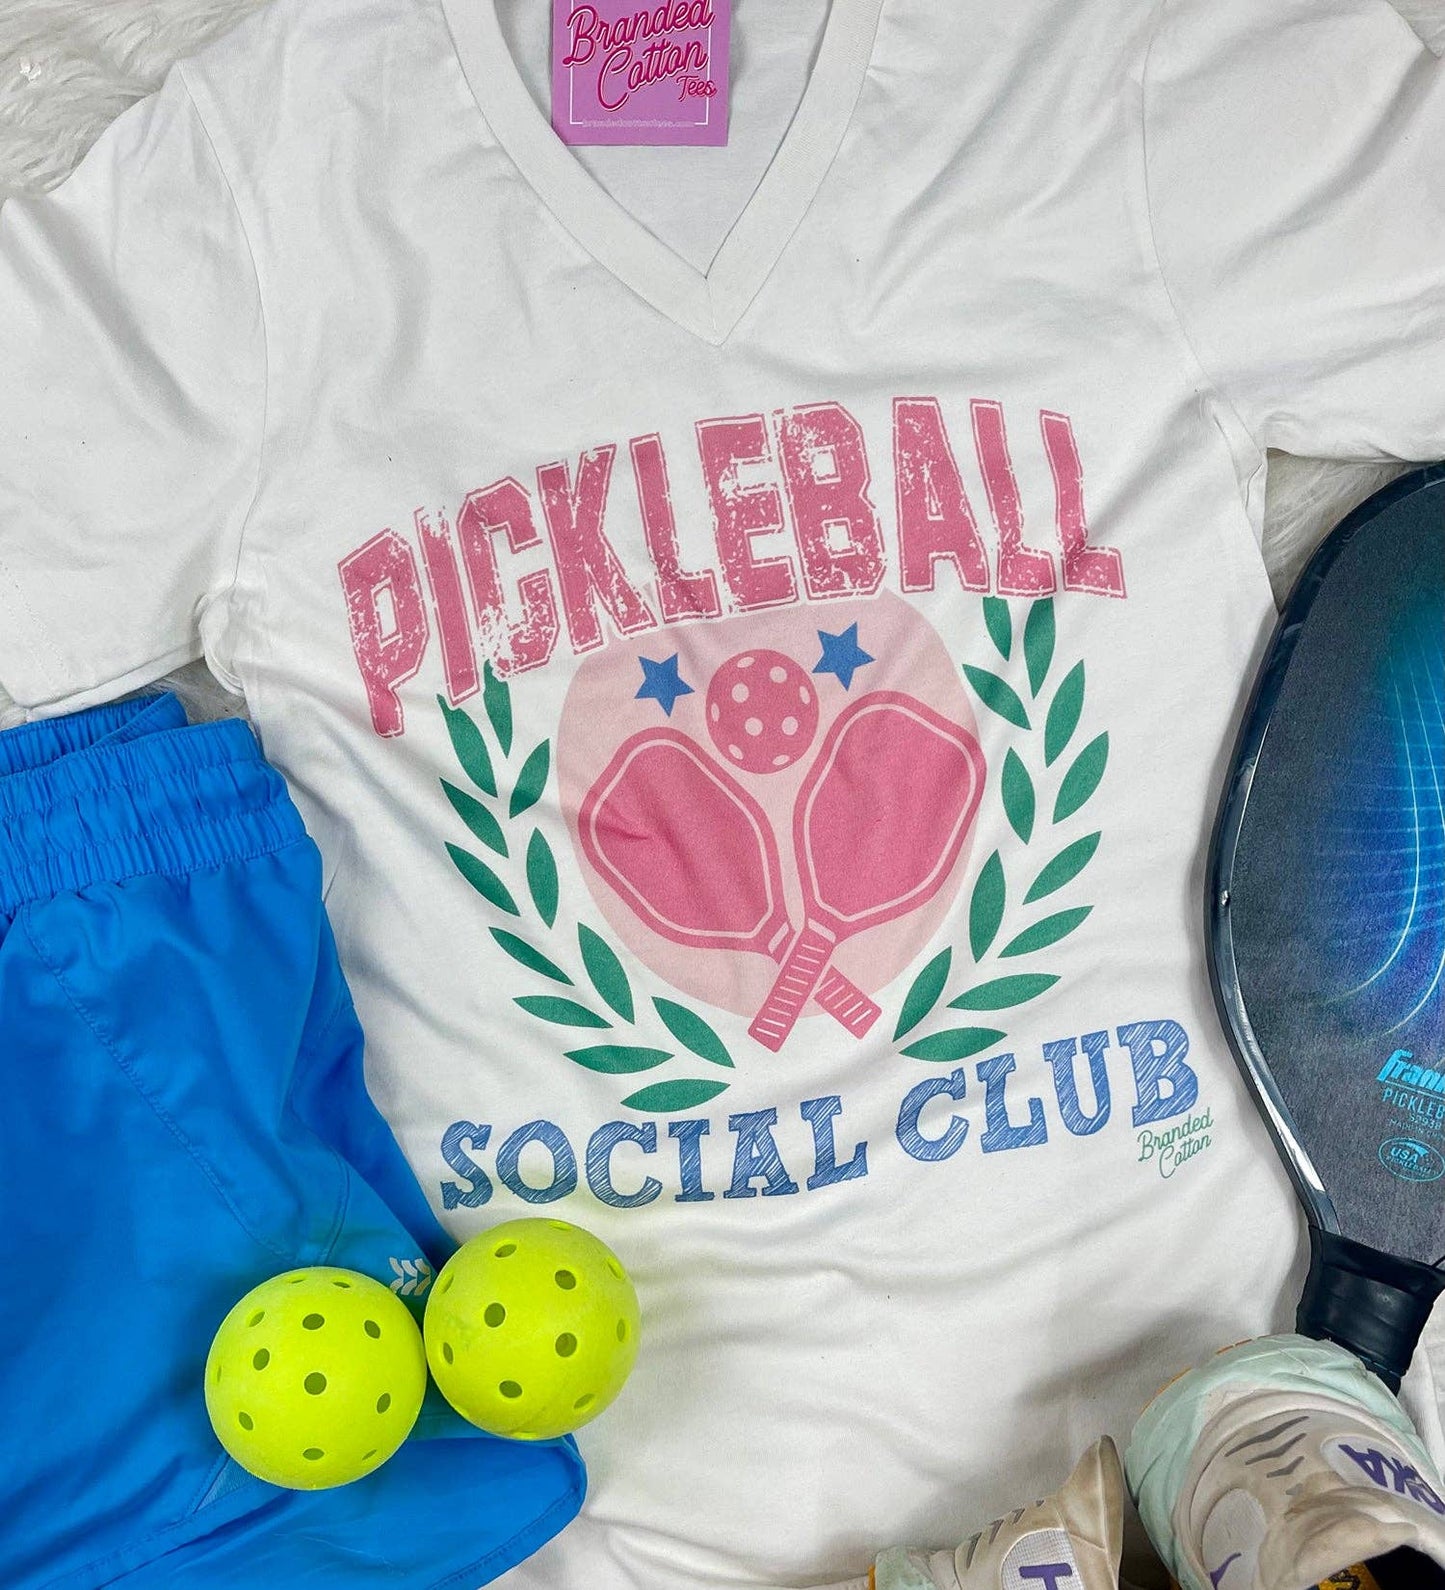 Pickleball Social Club Tee